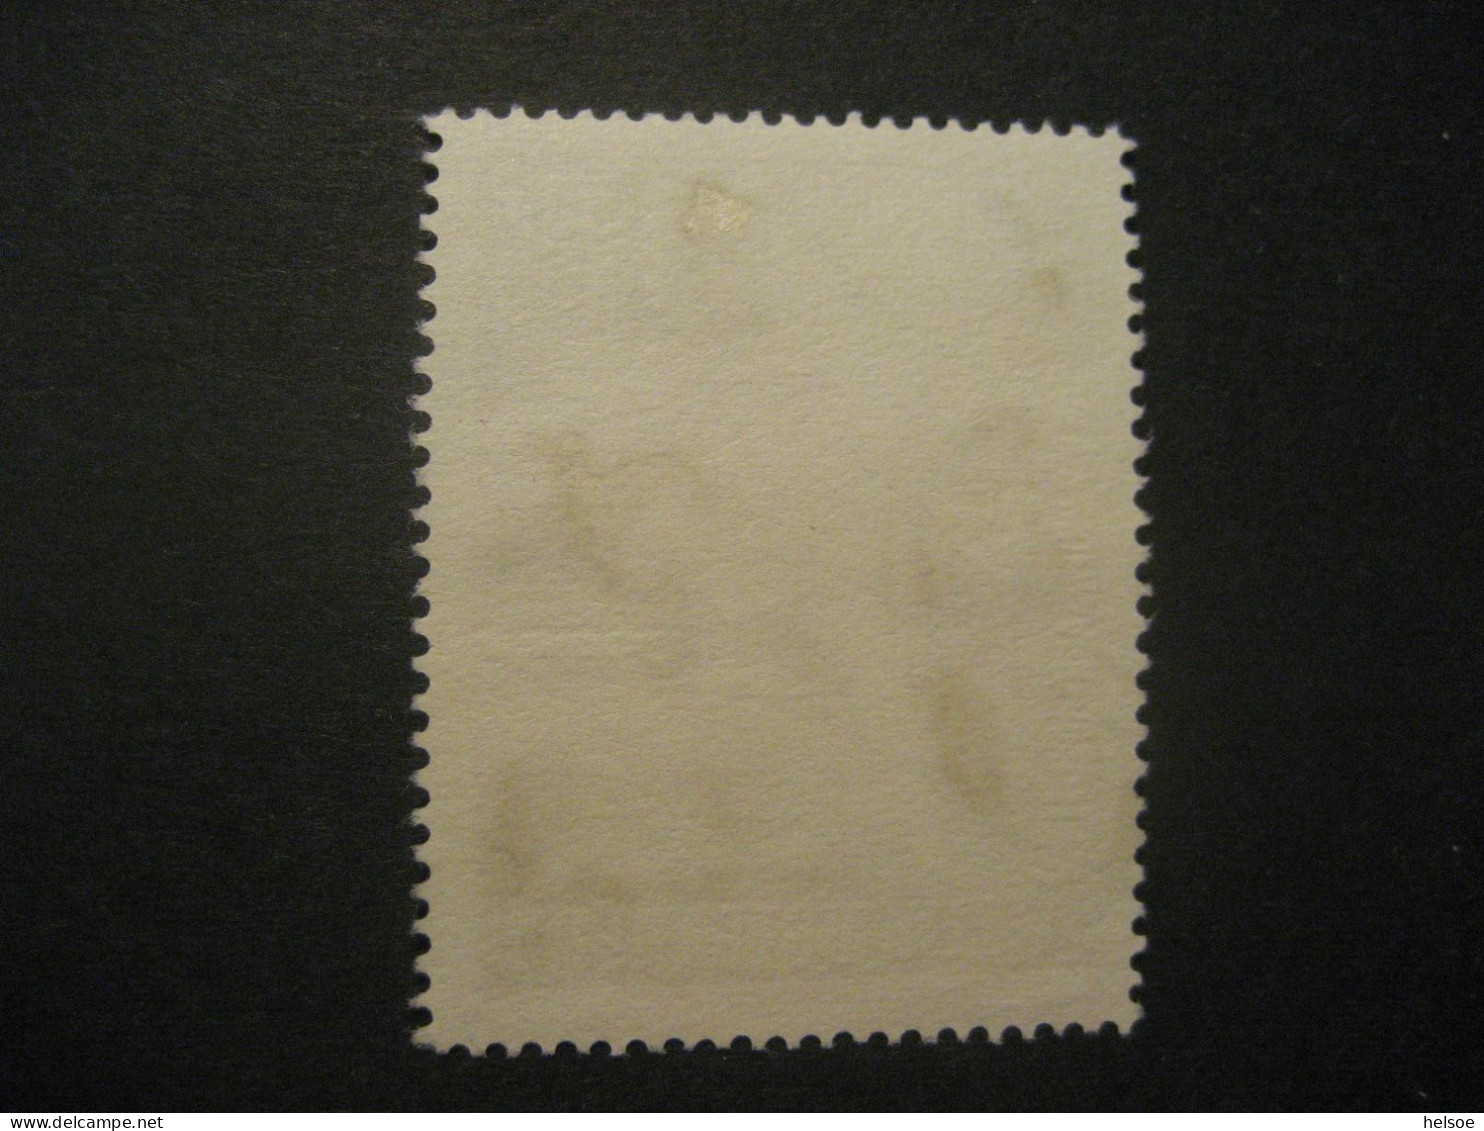 Österreich 1952- Tag Der Briefmarke Mit Plattenfehler Loch In Pfeilspitze, Mi. 972 II Gebraucht - Abarten & Kuriositäten